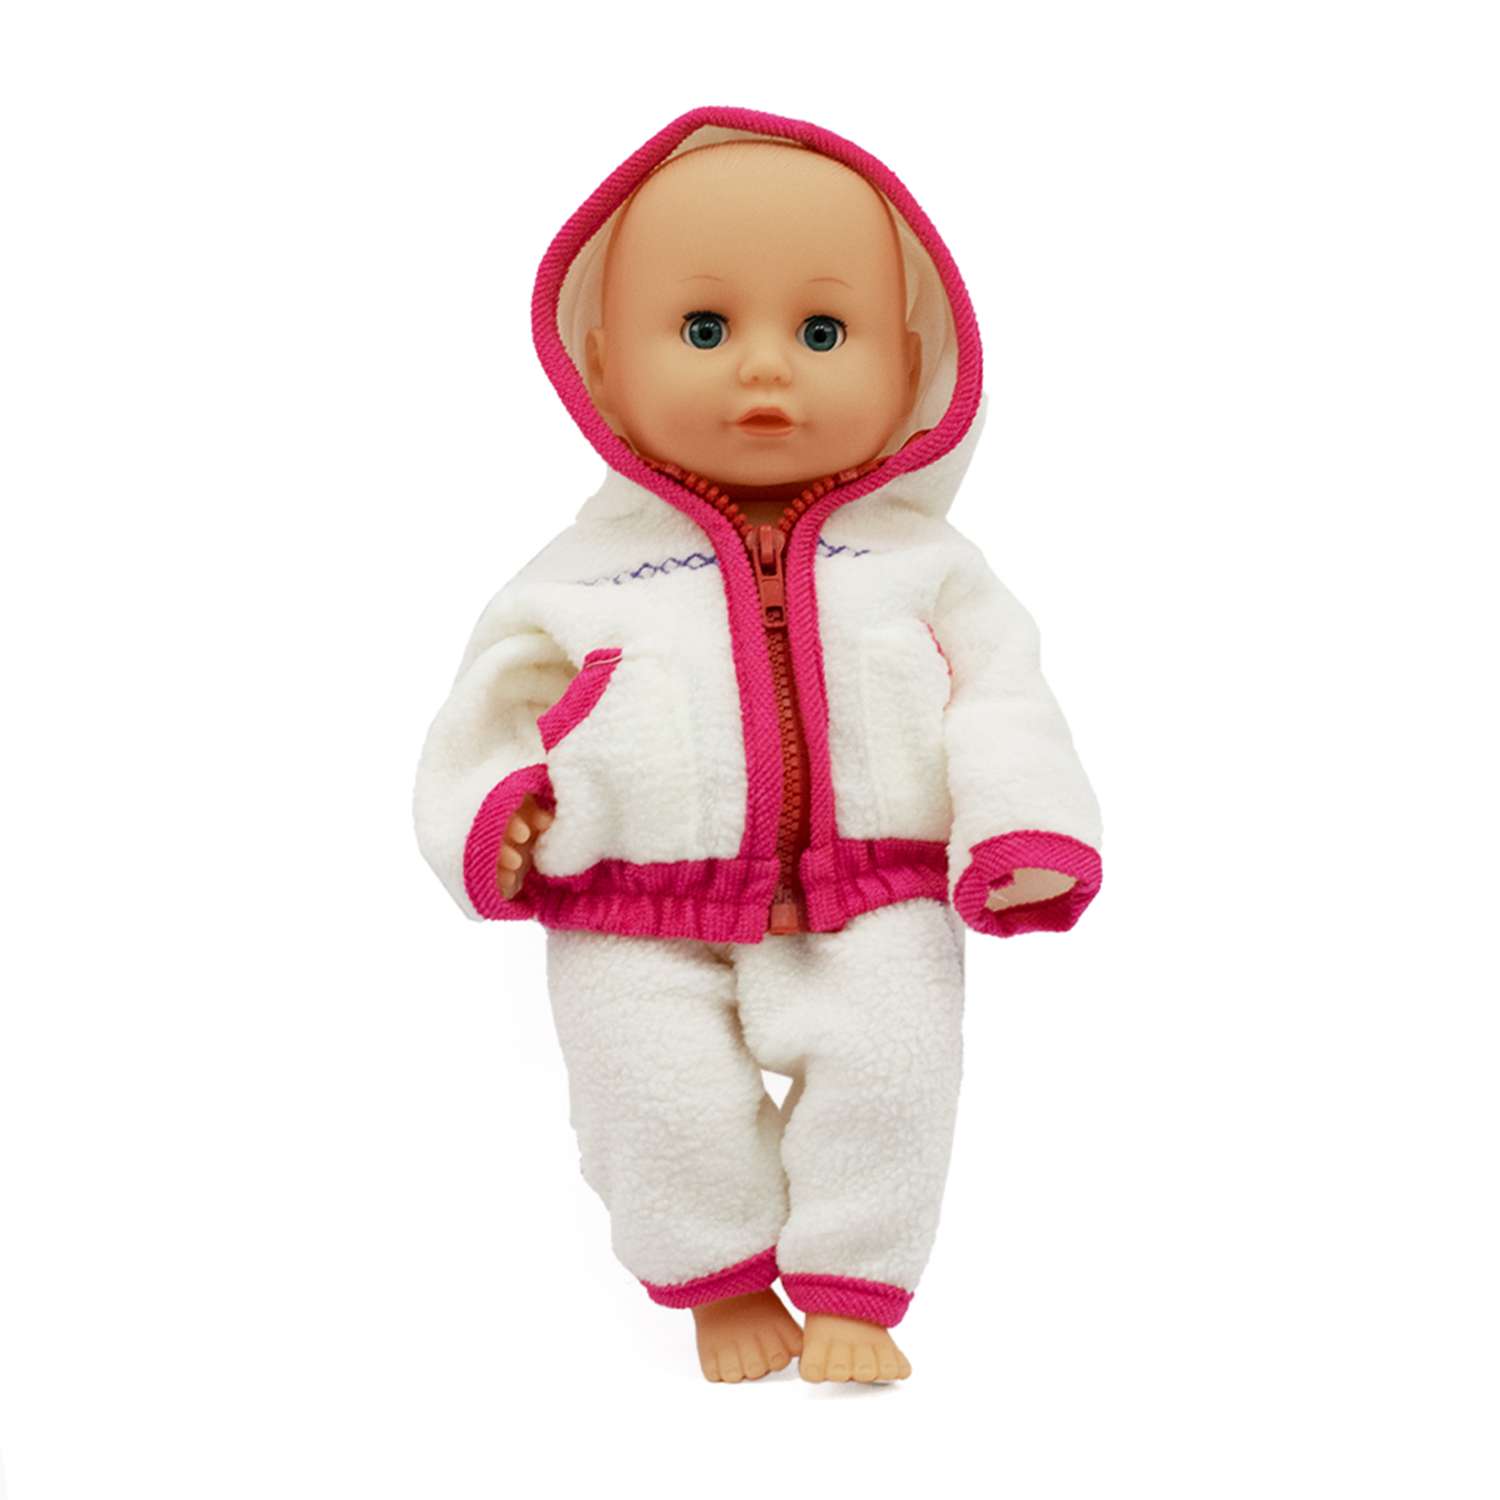 Одежда для пупса SHARKTOYS комплект одежды бело-розовый на куклу высотой 38-43 см 33800014 - фото 1